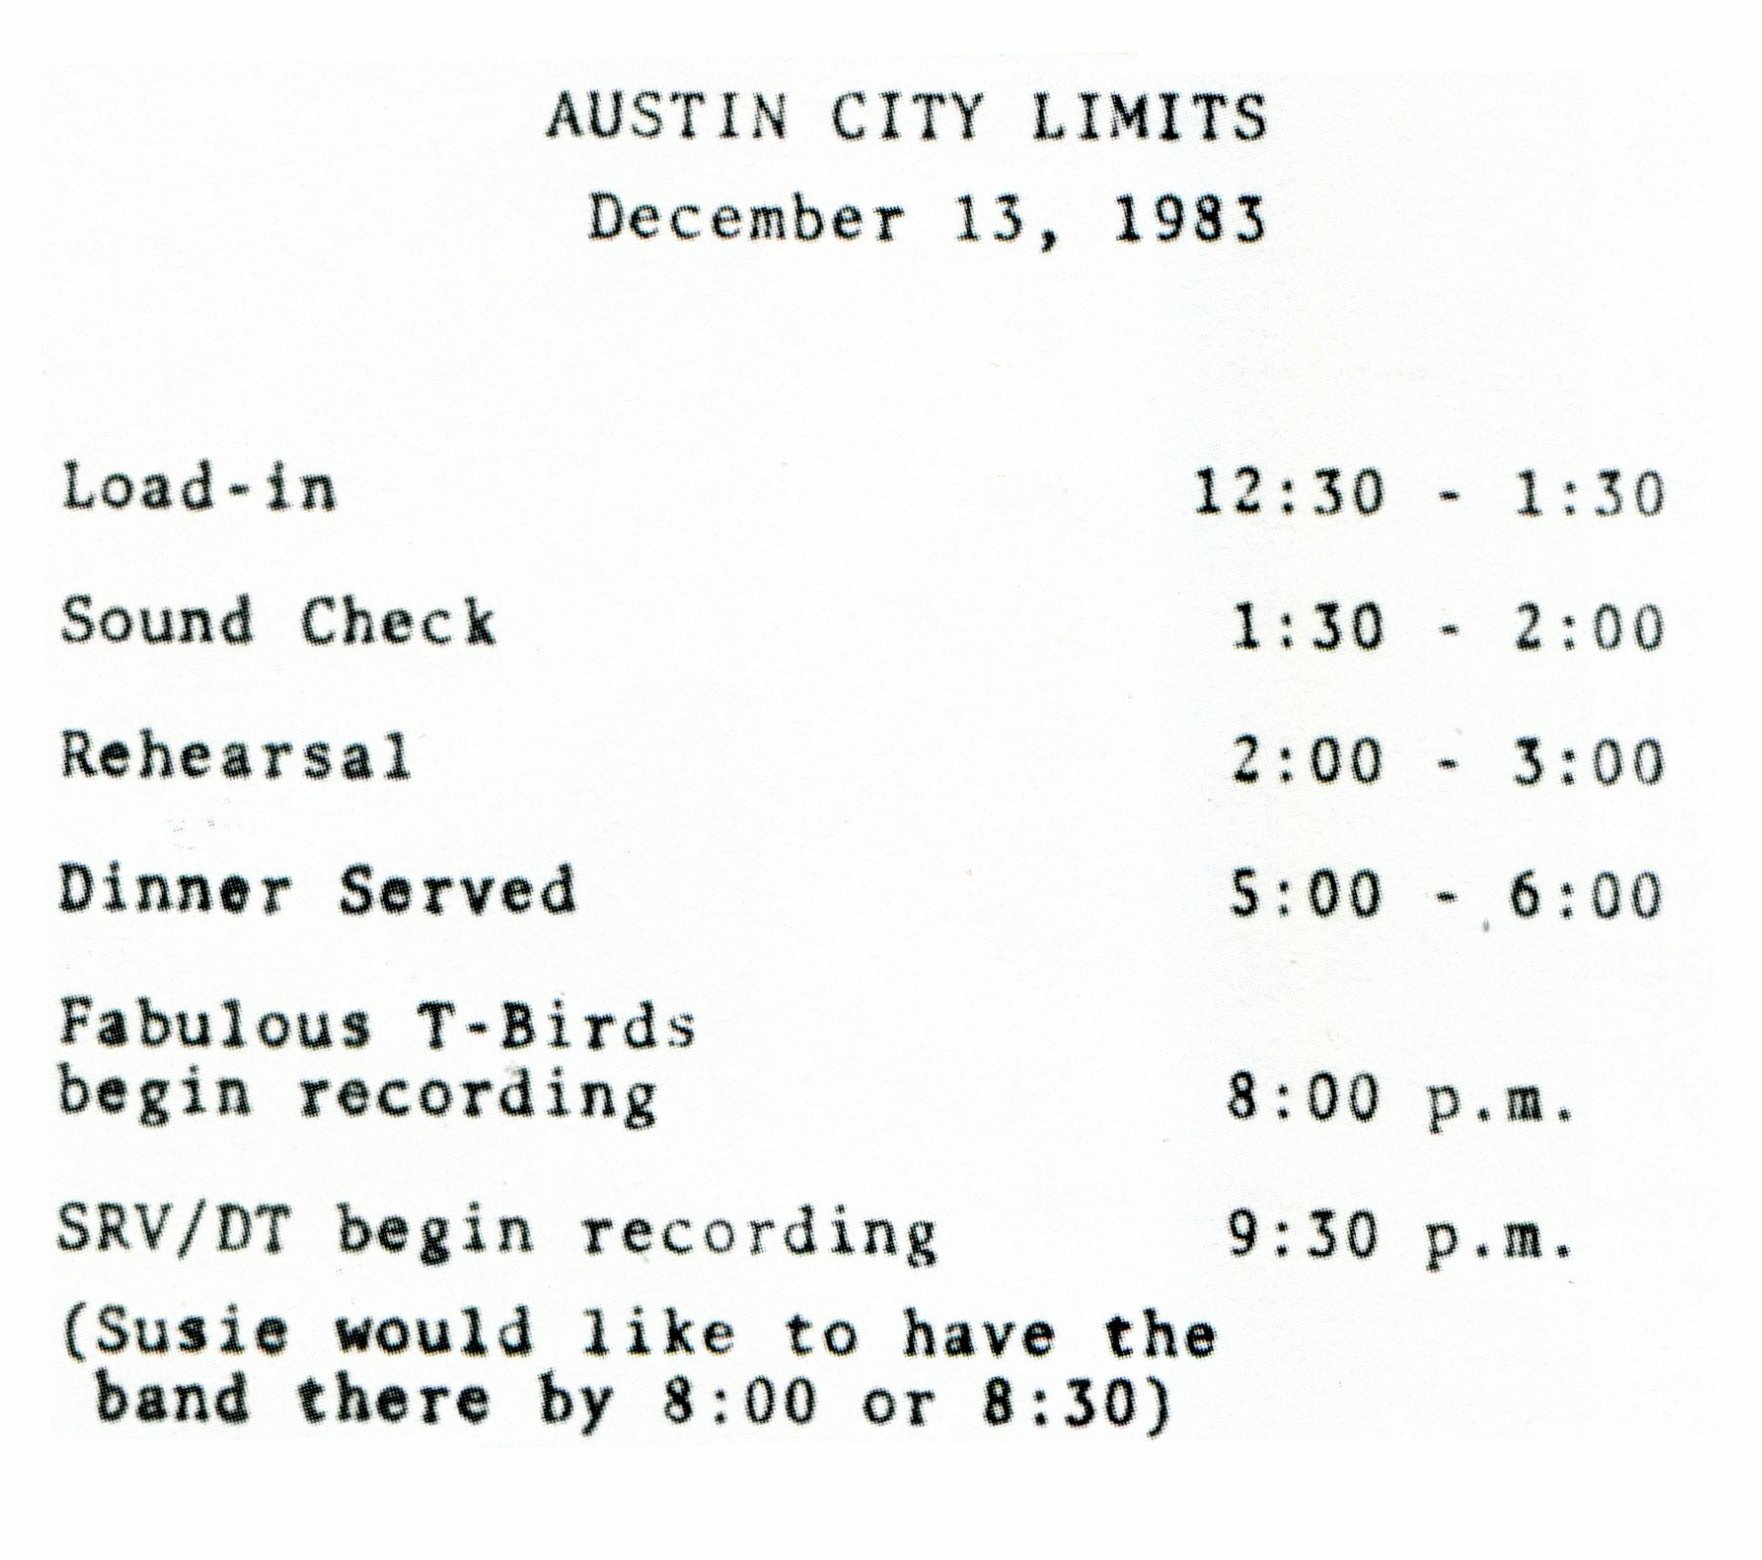 1983 Austin City Limits Schedule